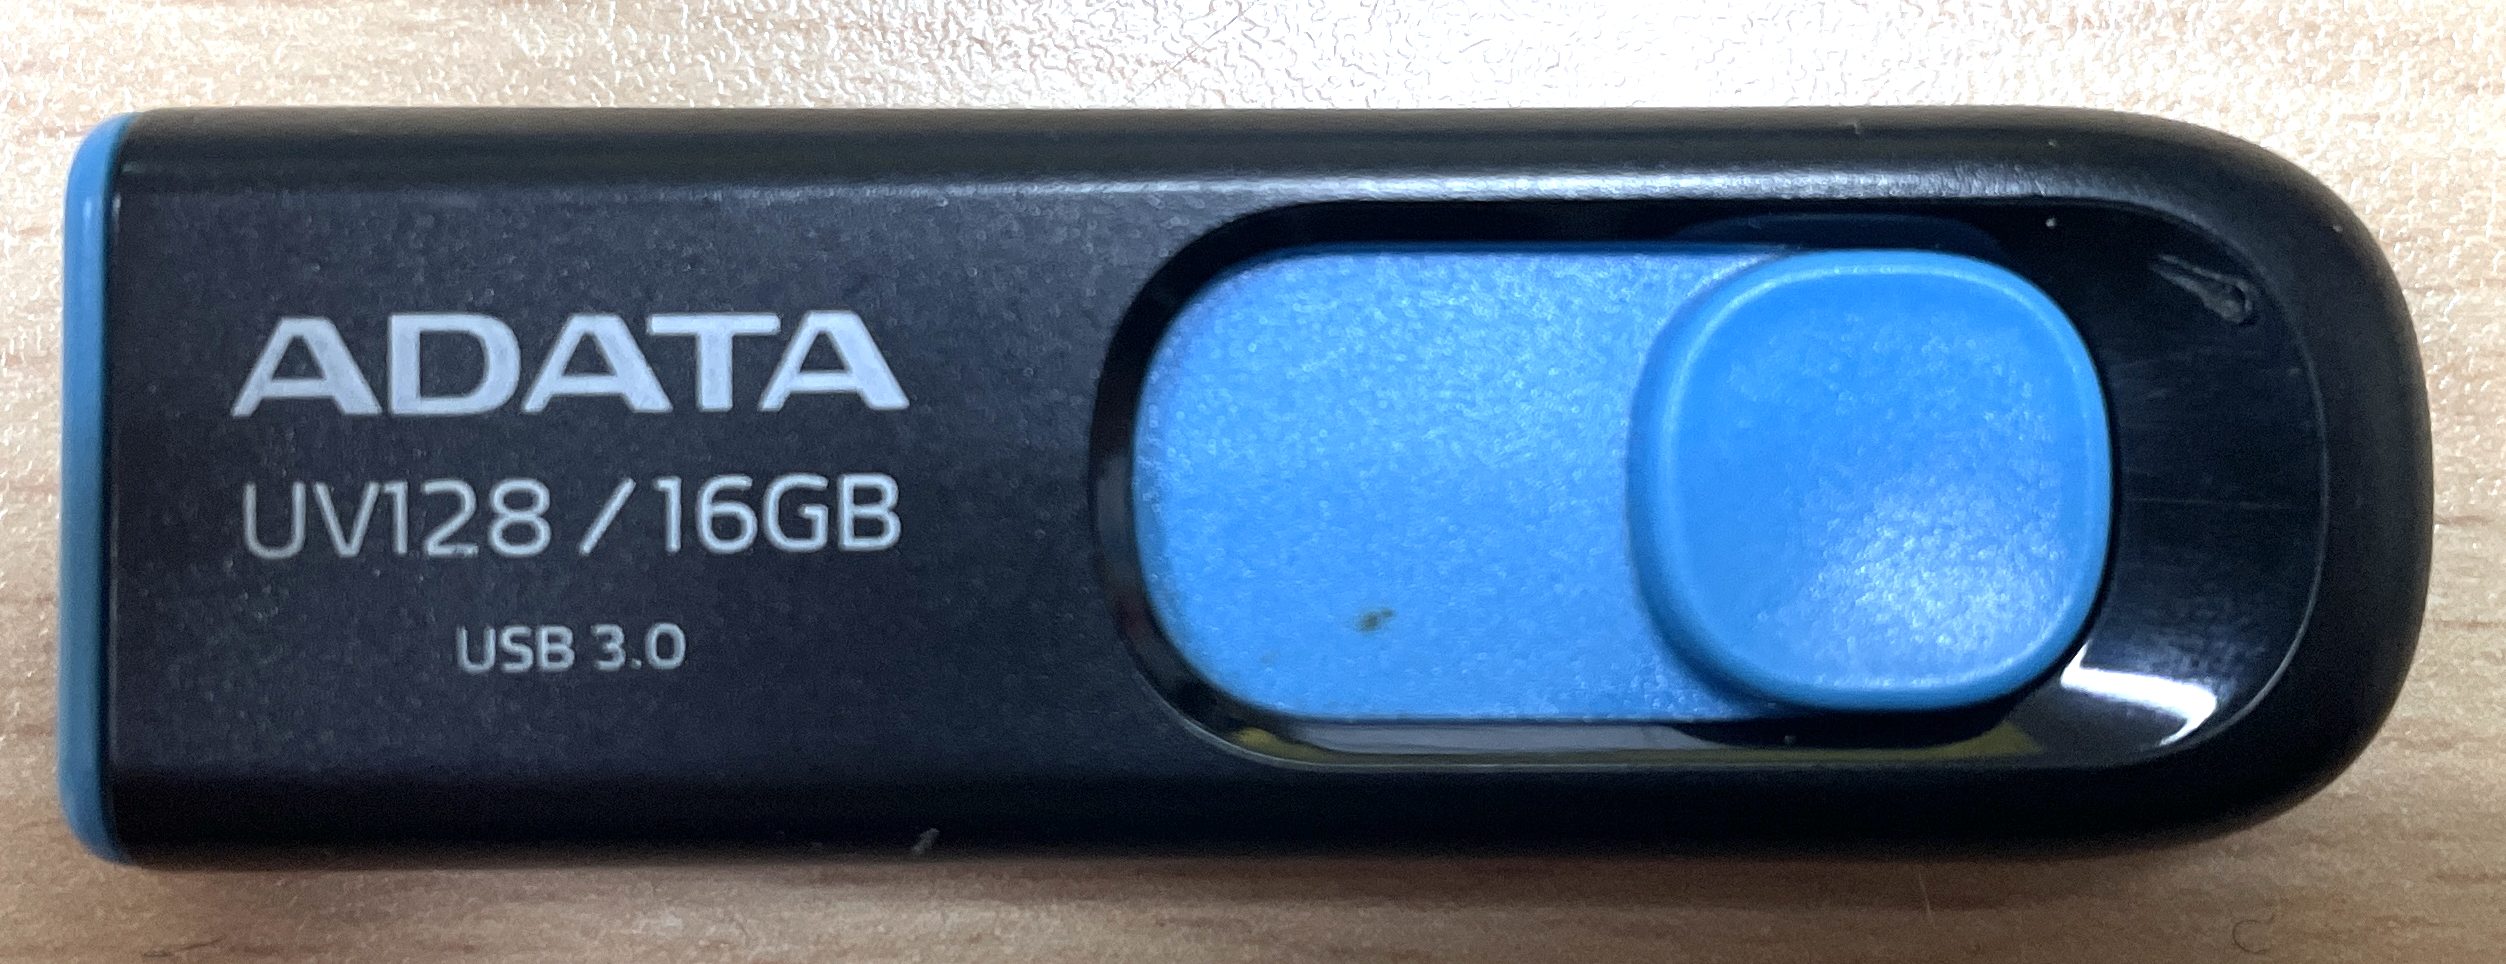 ADATA 16GB USB